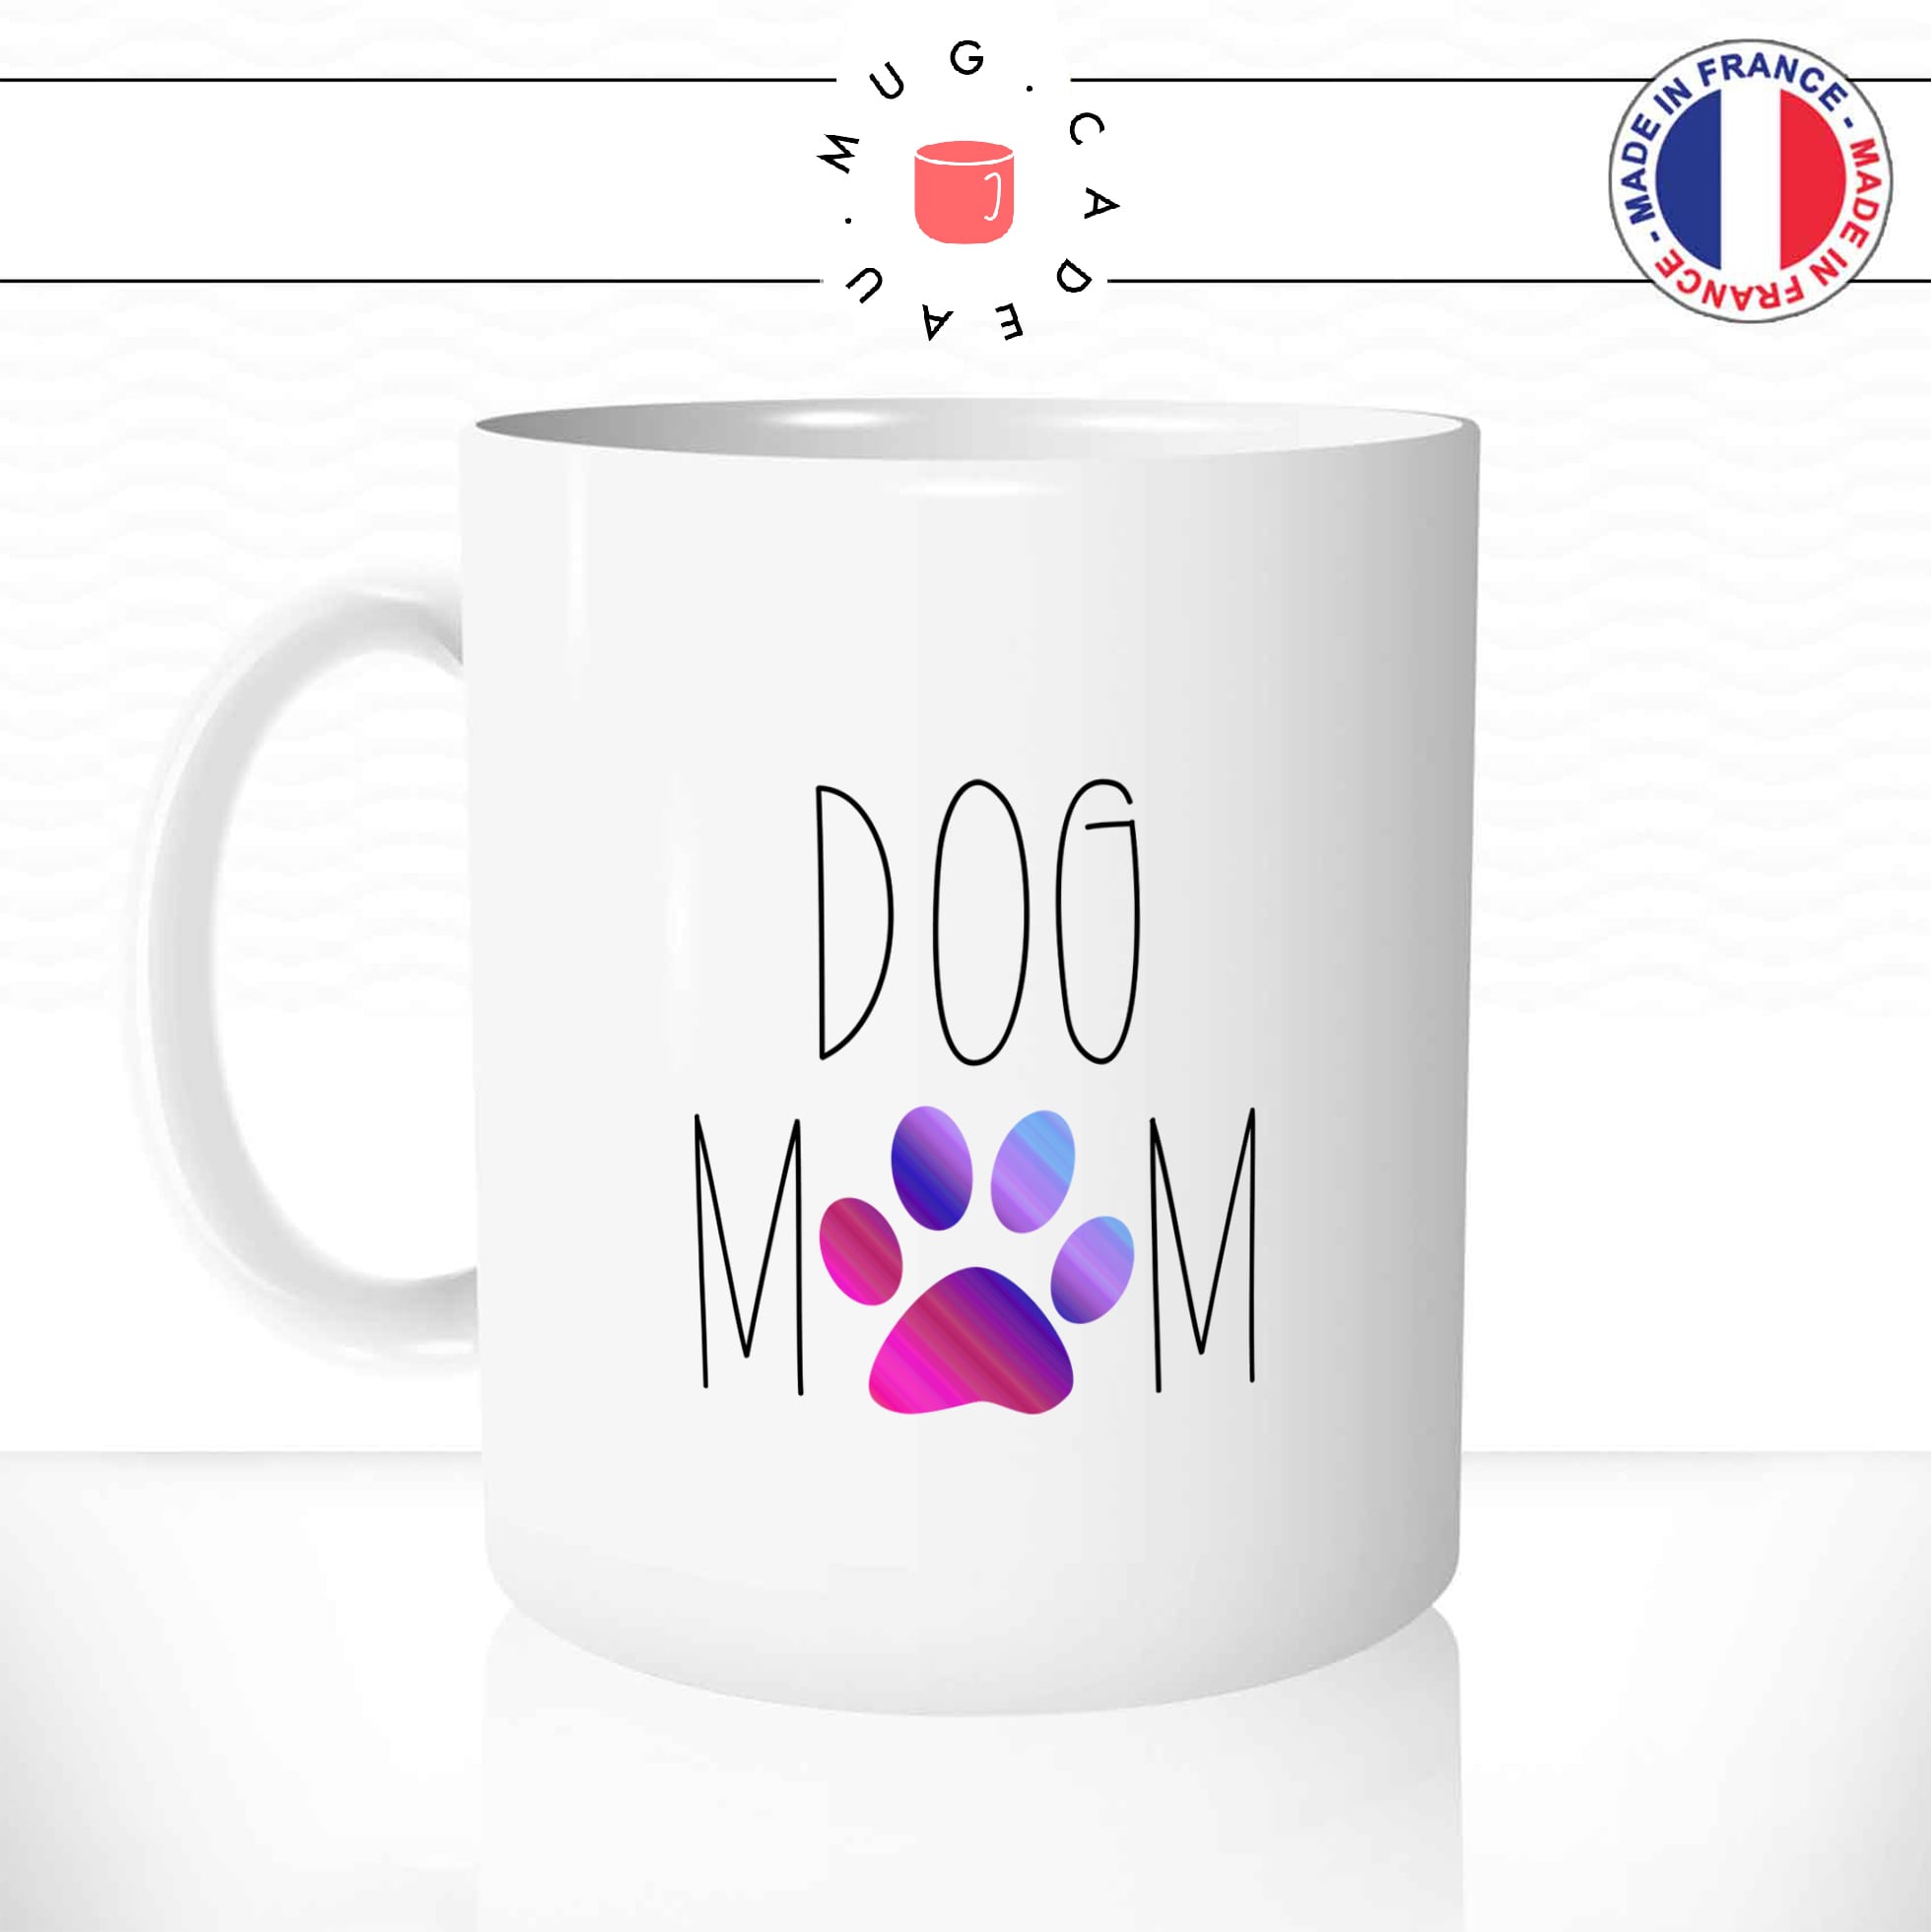 Mug Dog Mom